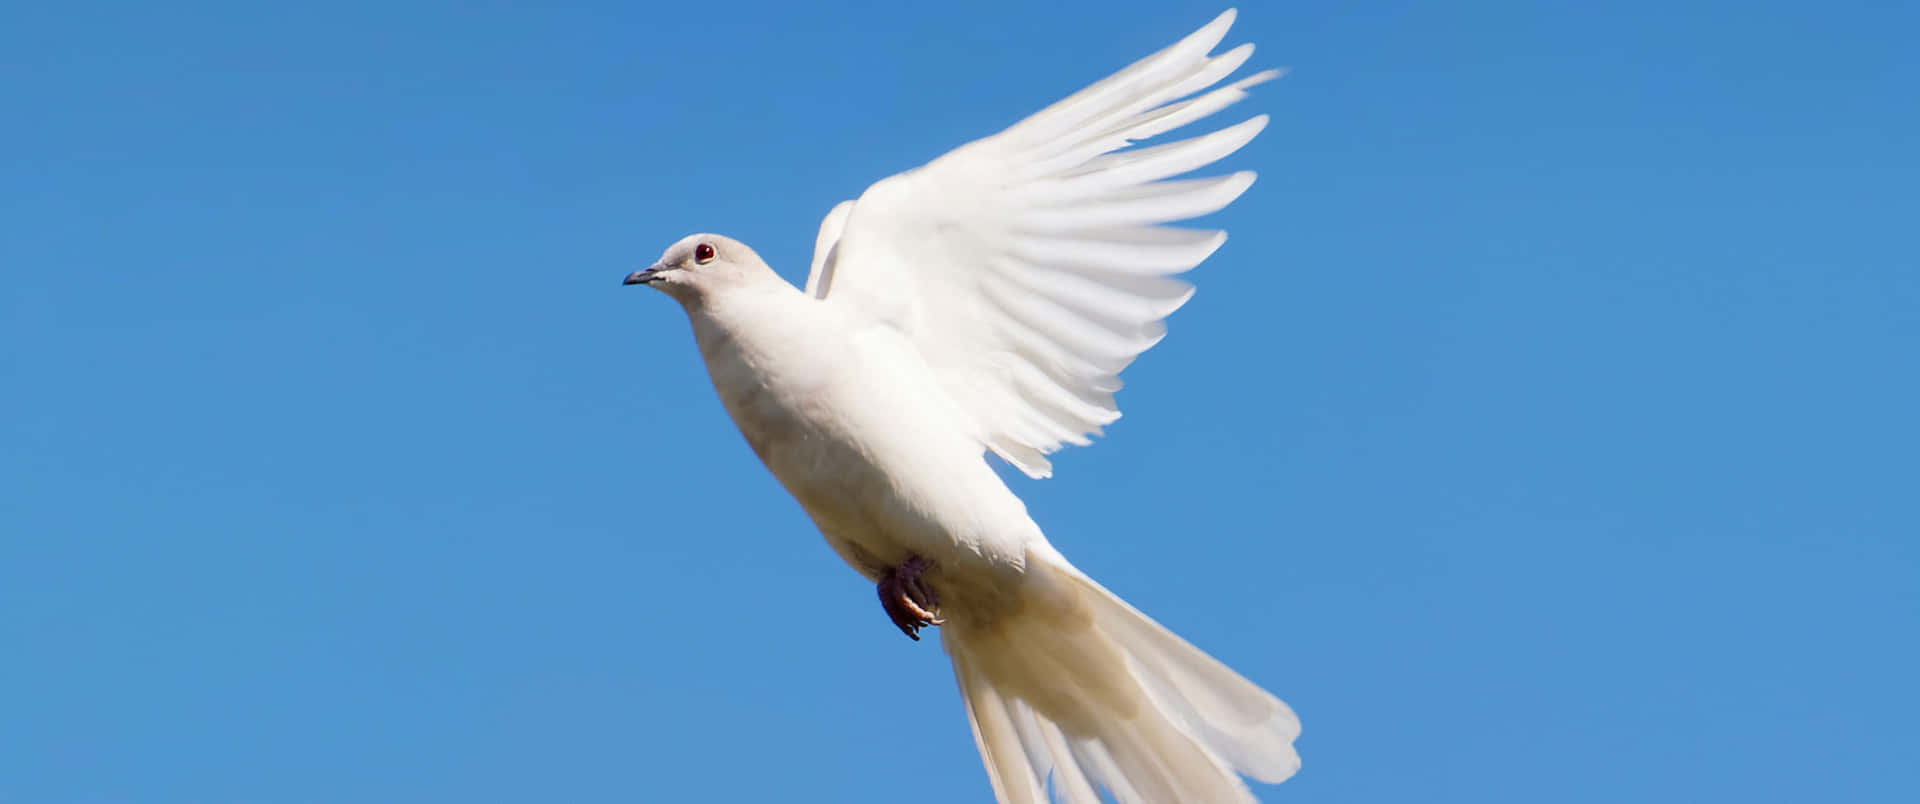 3440x1440 Animal Flying White Dove Wallpaper